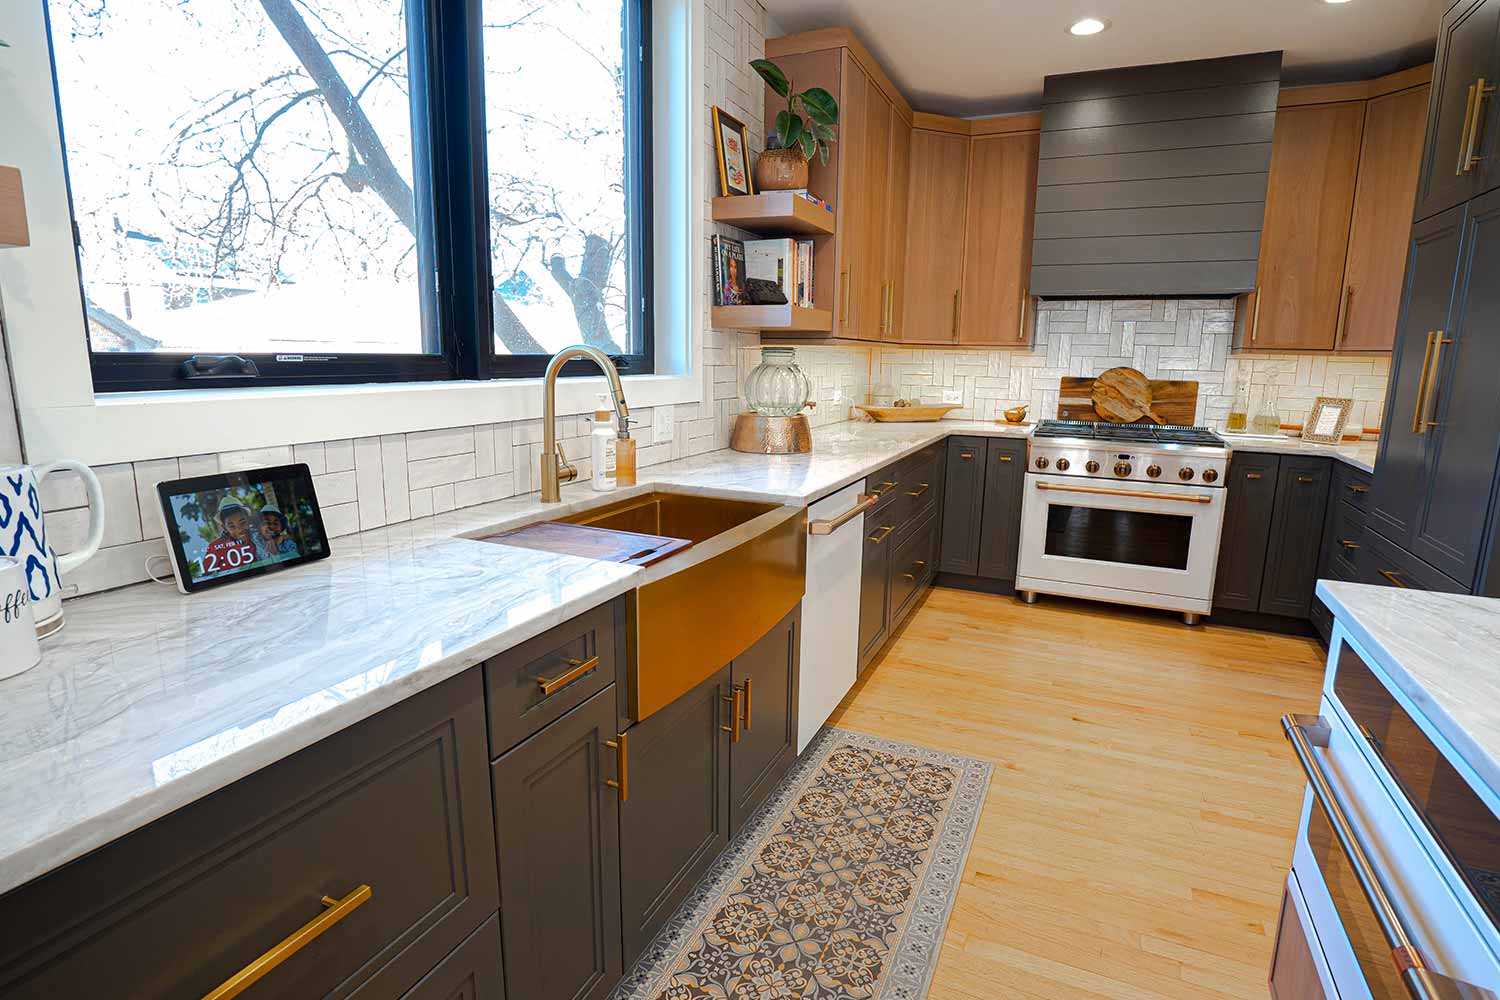 Modern kitchen remodel by Elik Homes.